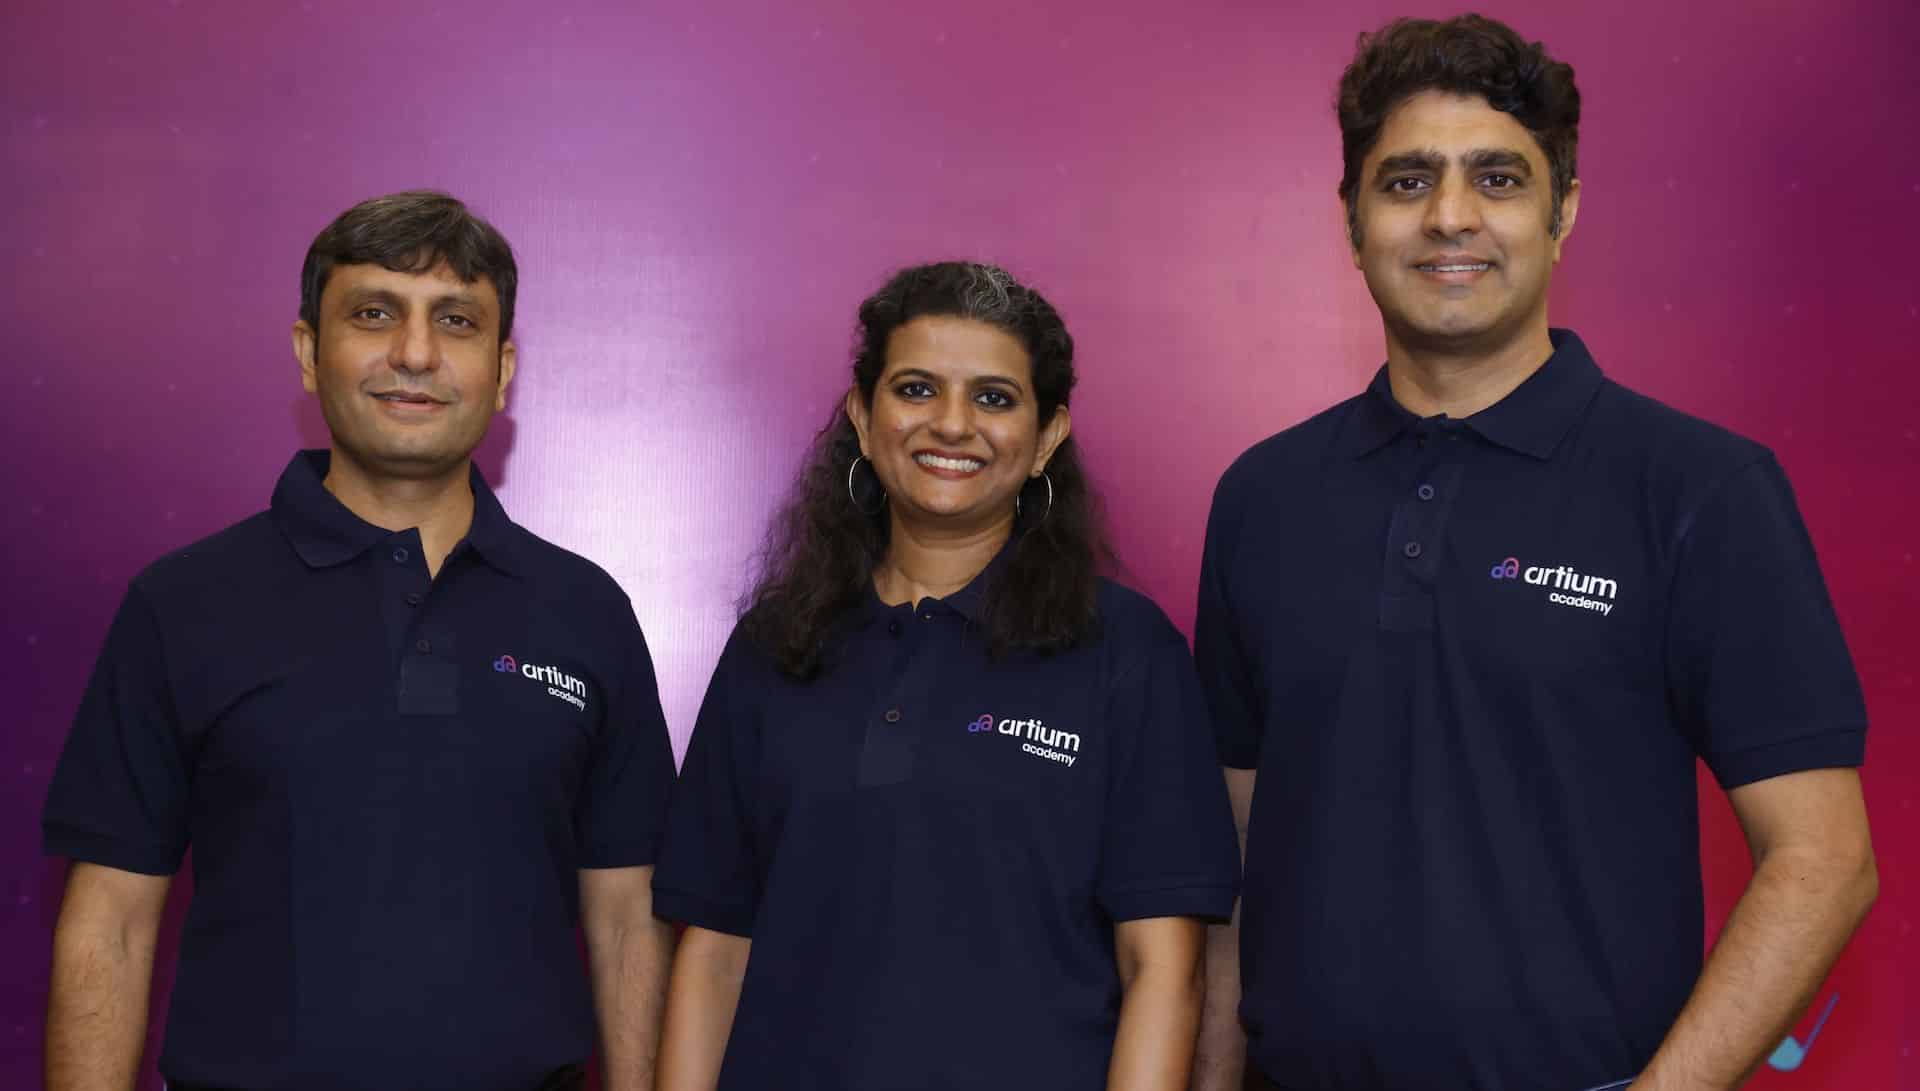 Chiratae Ventures Leads $3 million financing round in Artium Academy